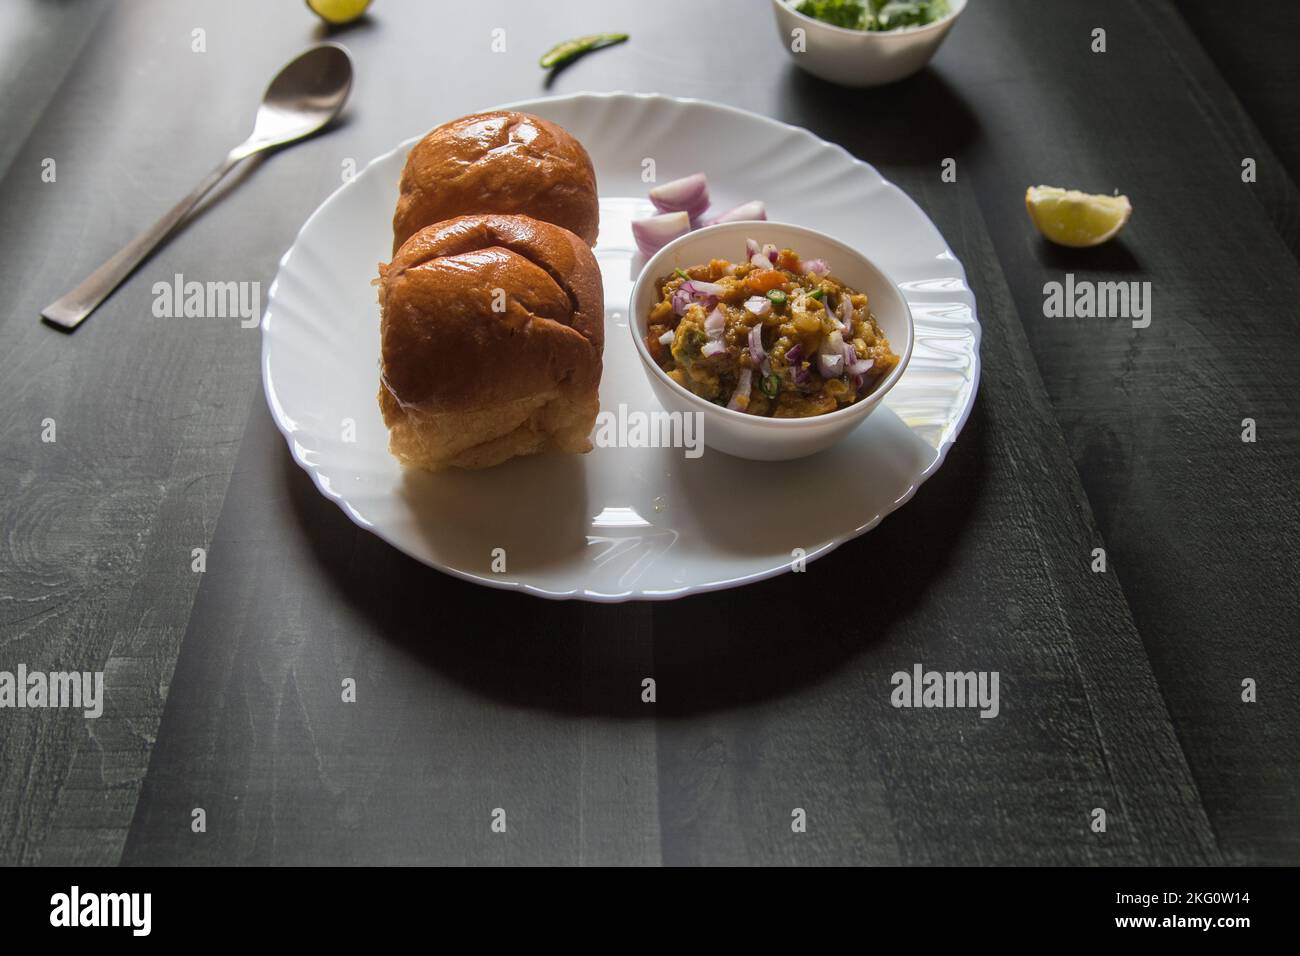 Cuisine indienne de rue pav bhaji servi dans un bol. Banque D'Images